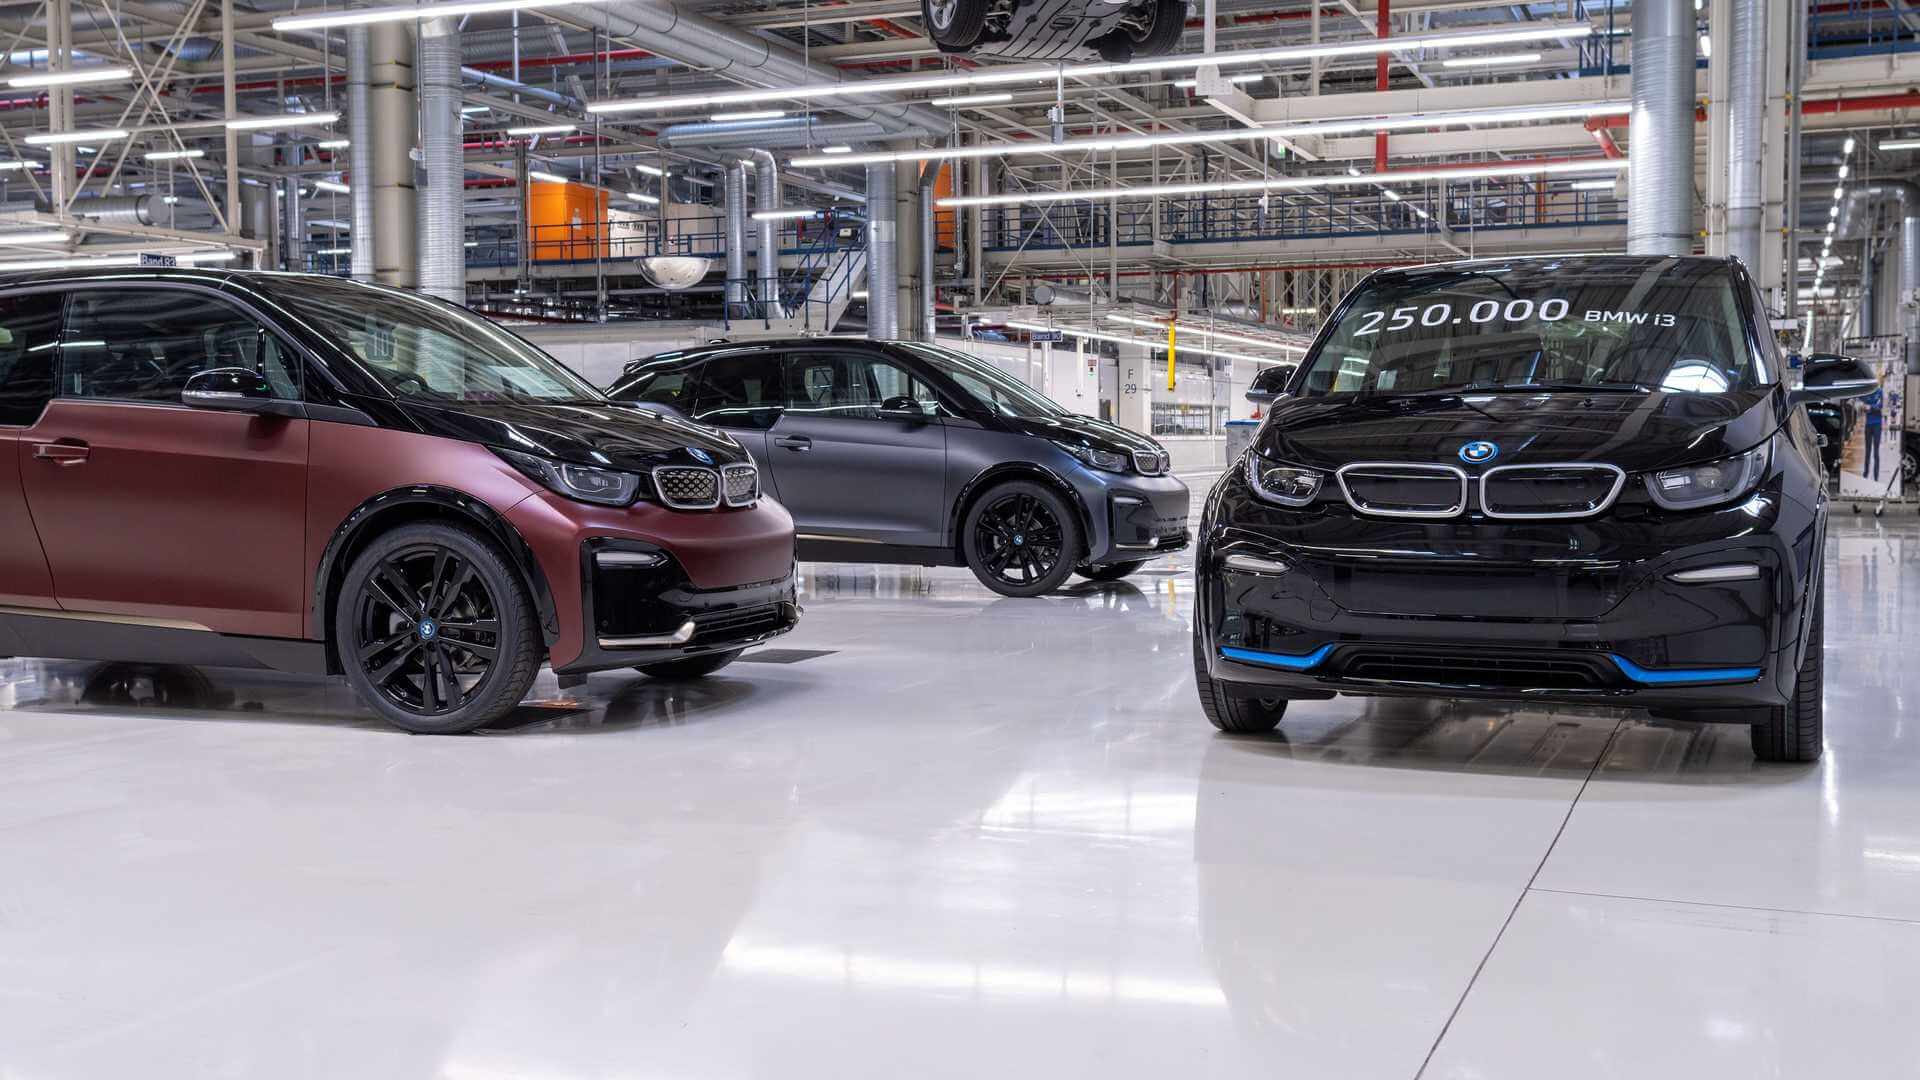 إيقاف إنتاج BMW i3 بعد تصنيع 250 ألف سيارة (1)